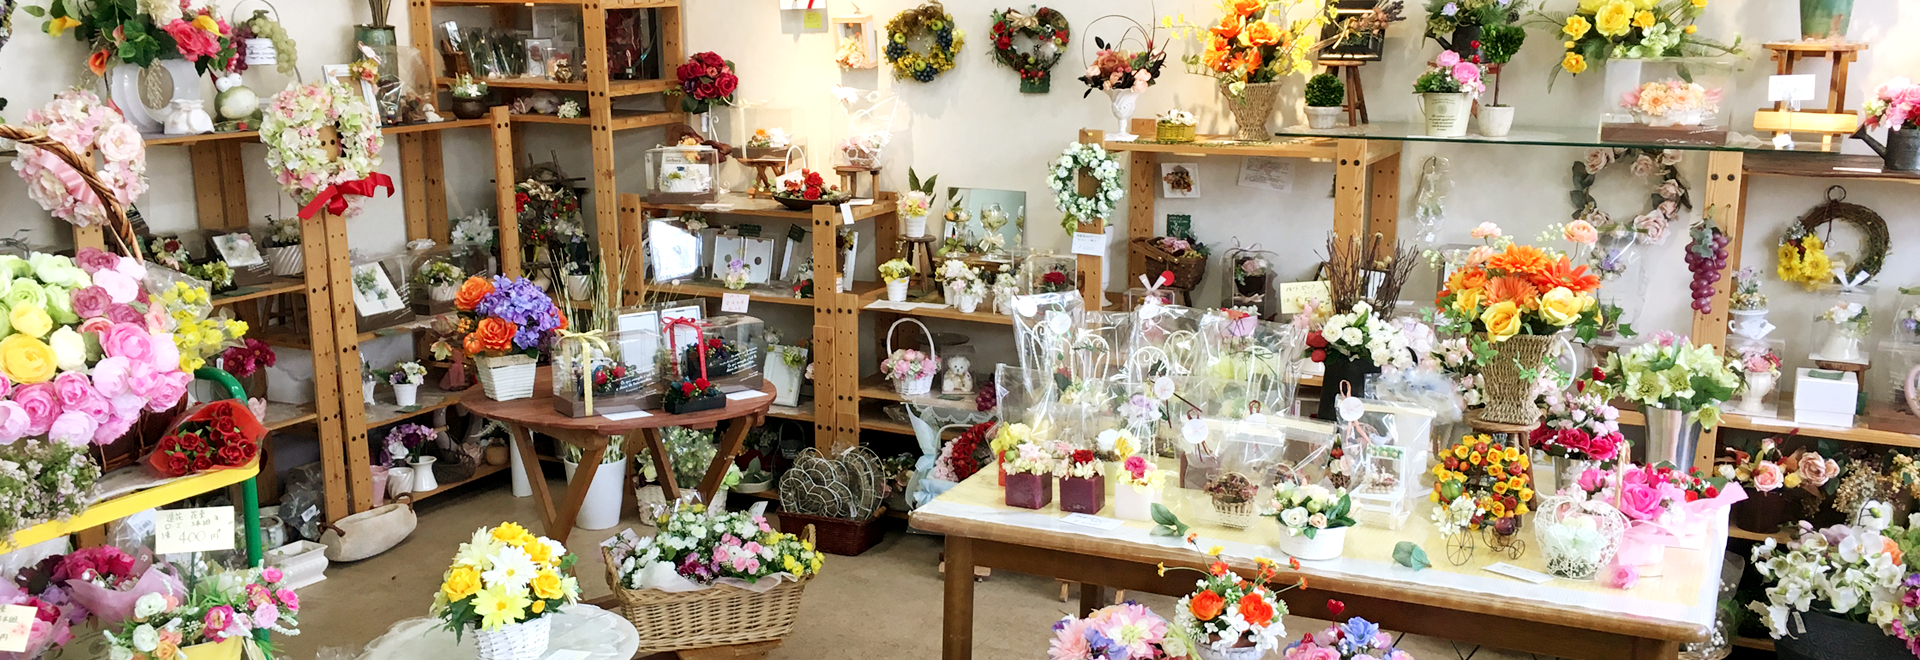 ワンコインフラワーはお花の総合百貨店です。北の国から華のある生活をお届けします。